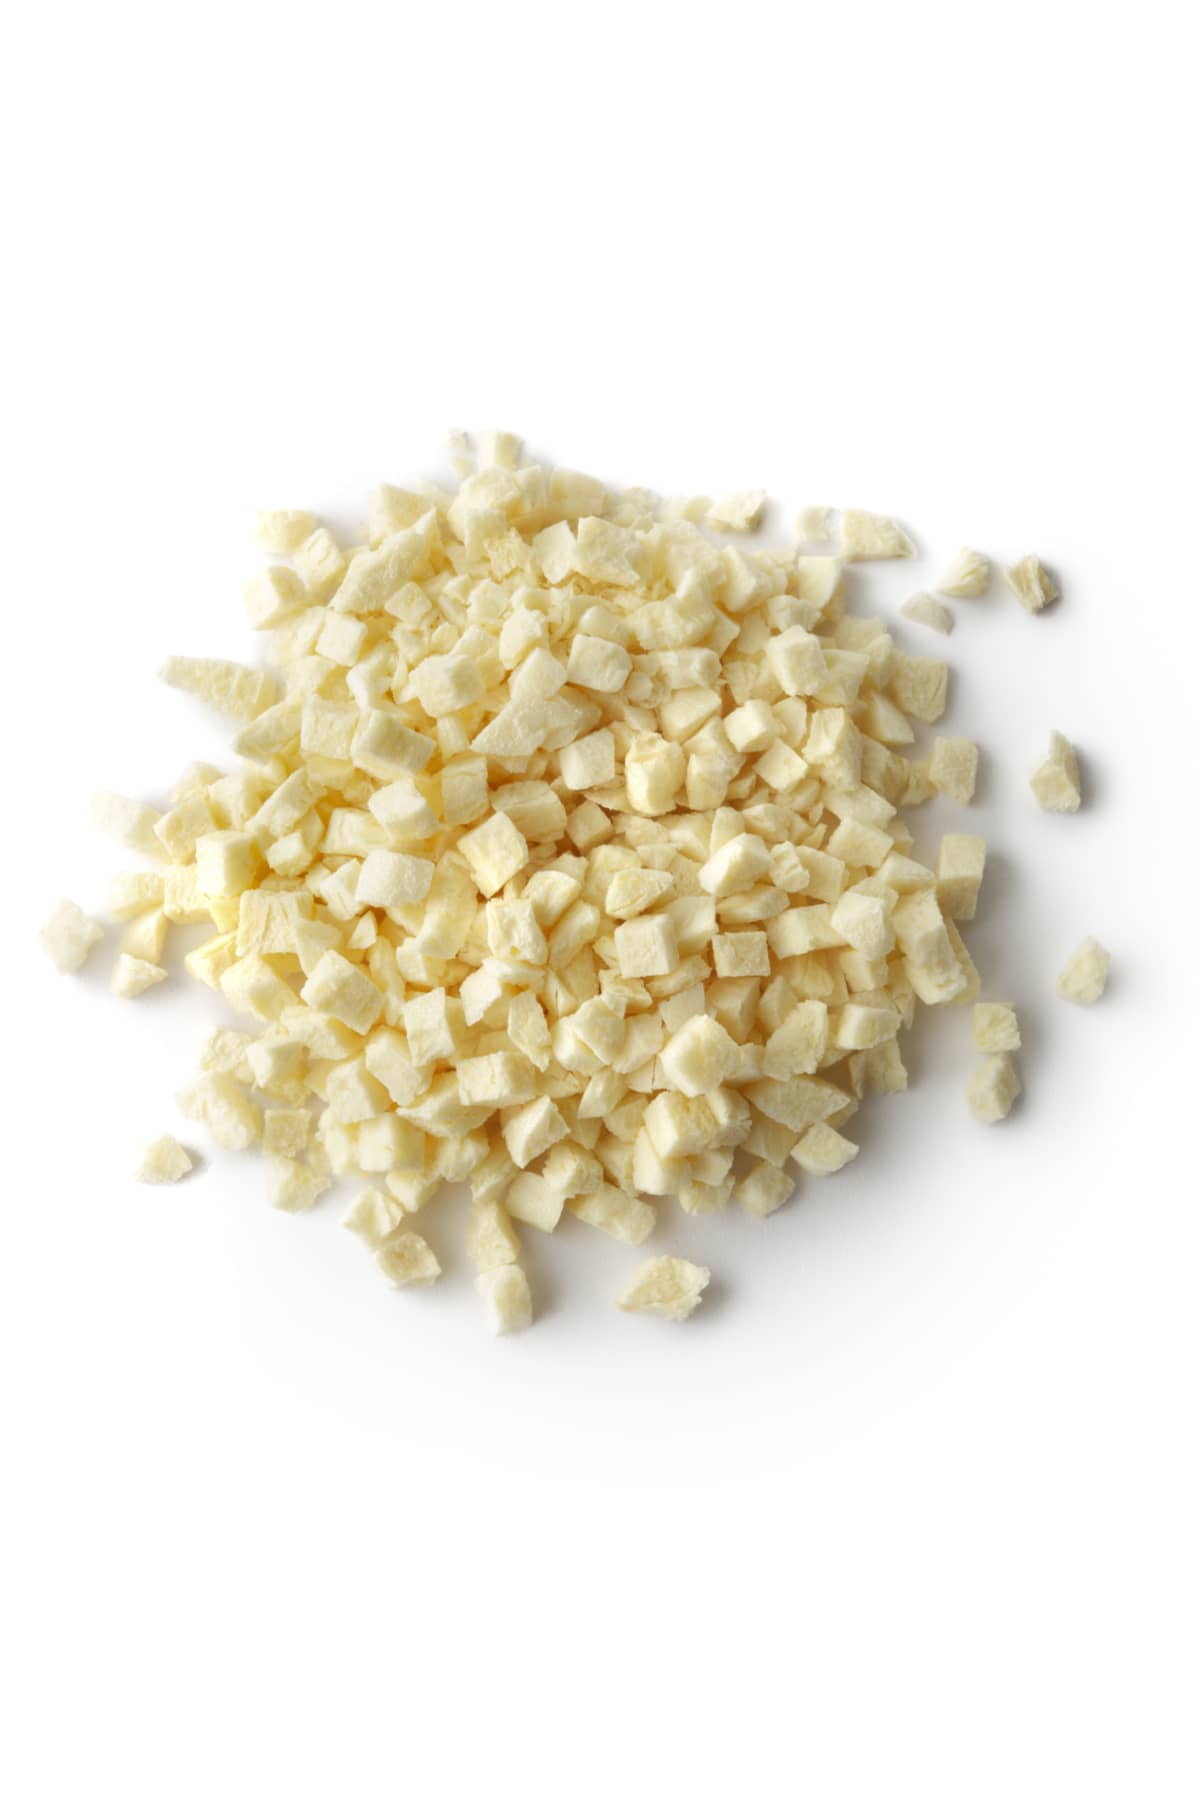 Minced garlic on white